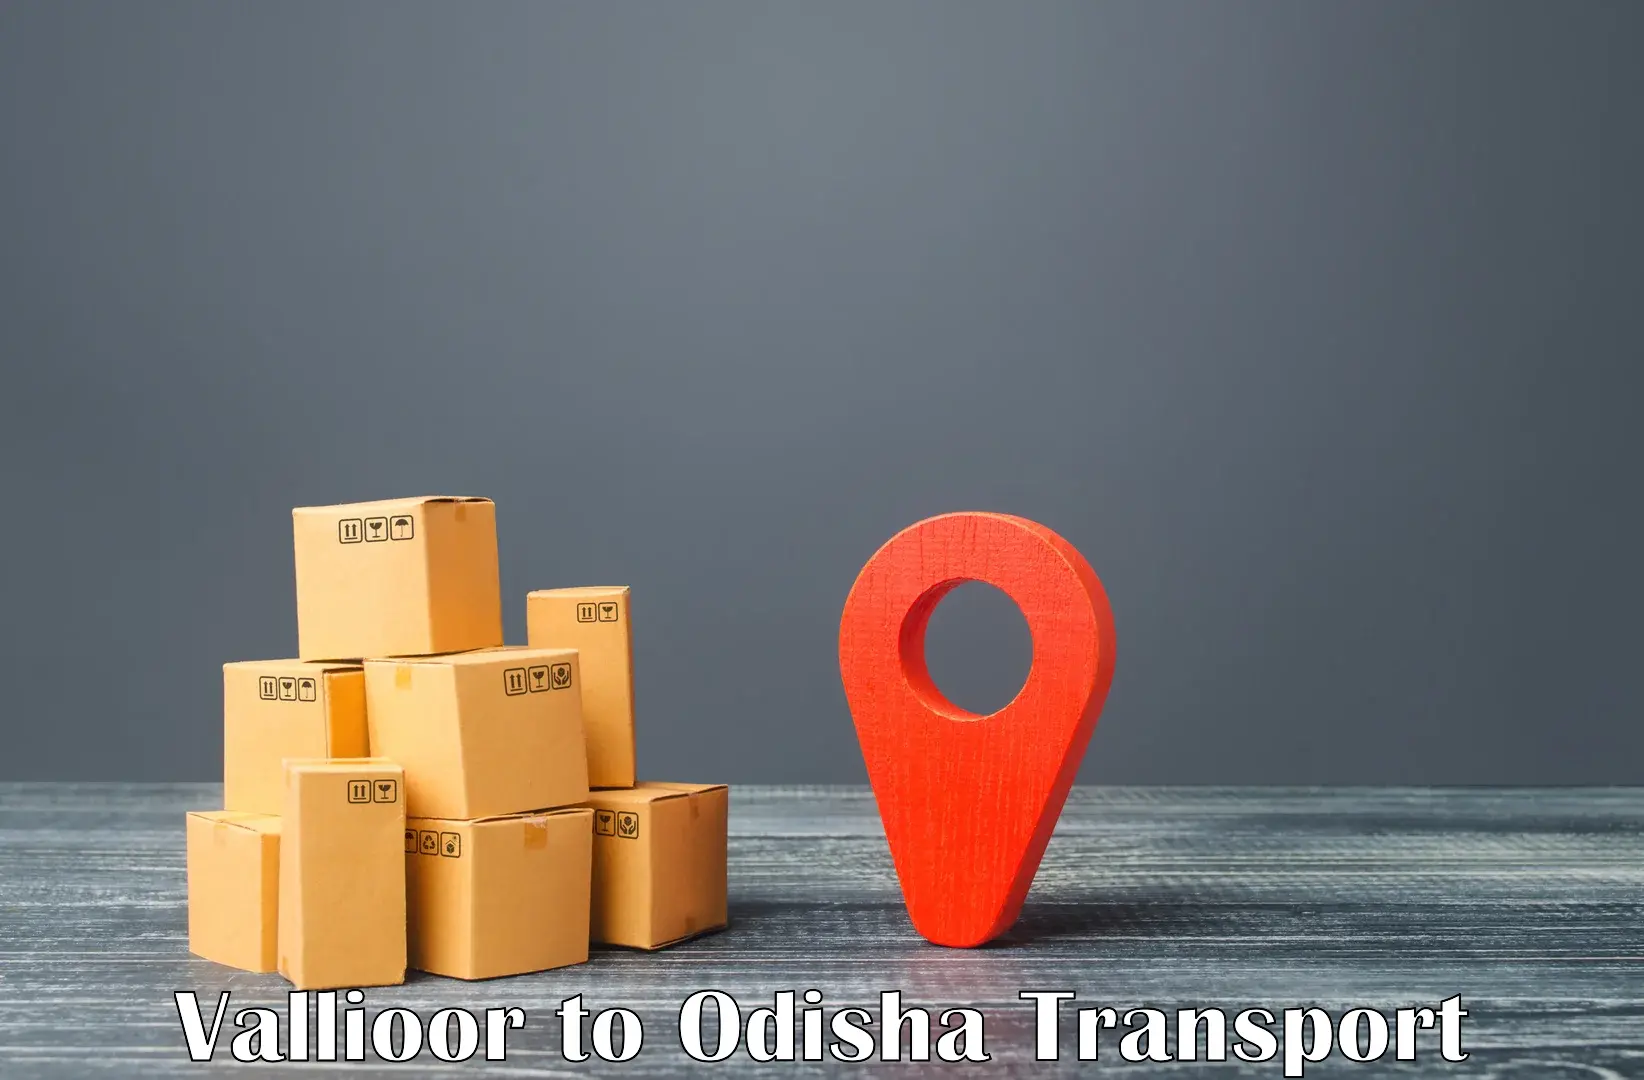 Nearest transport service Vallioor to Odisha